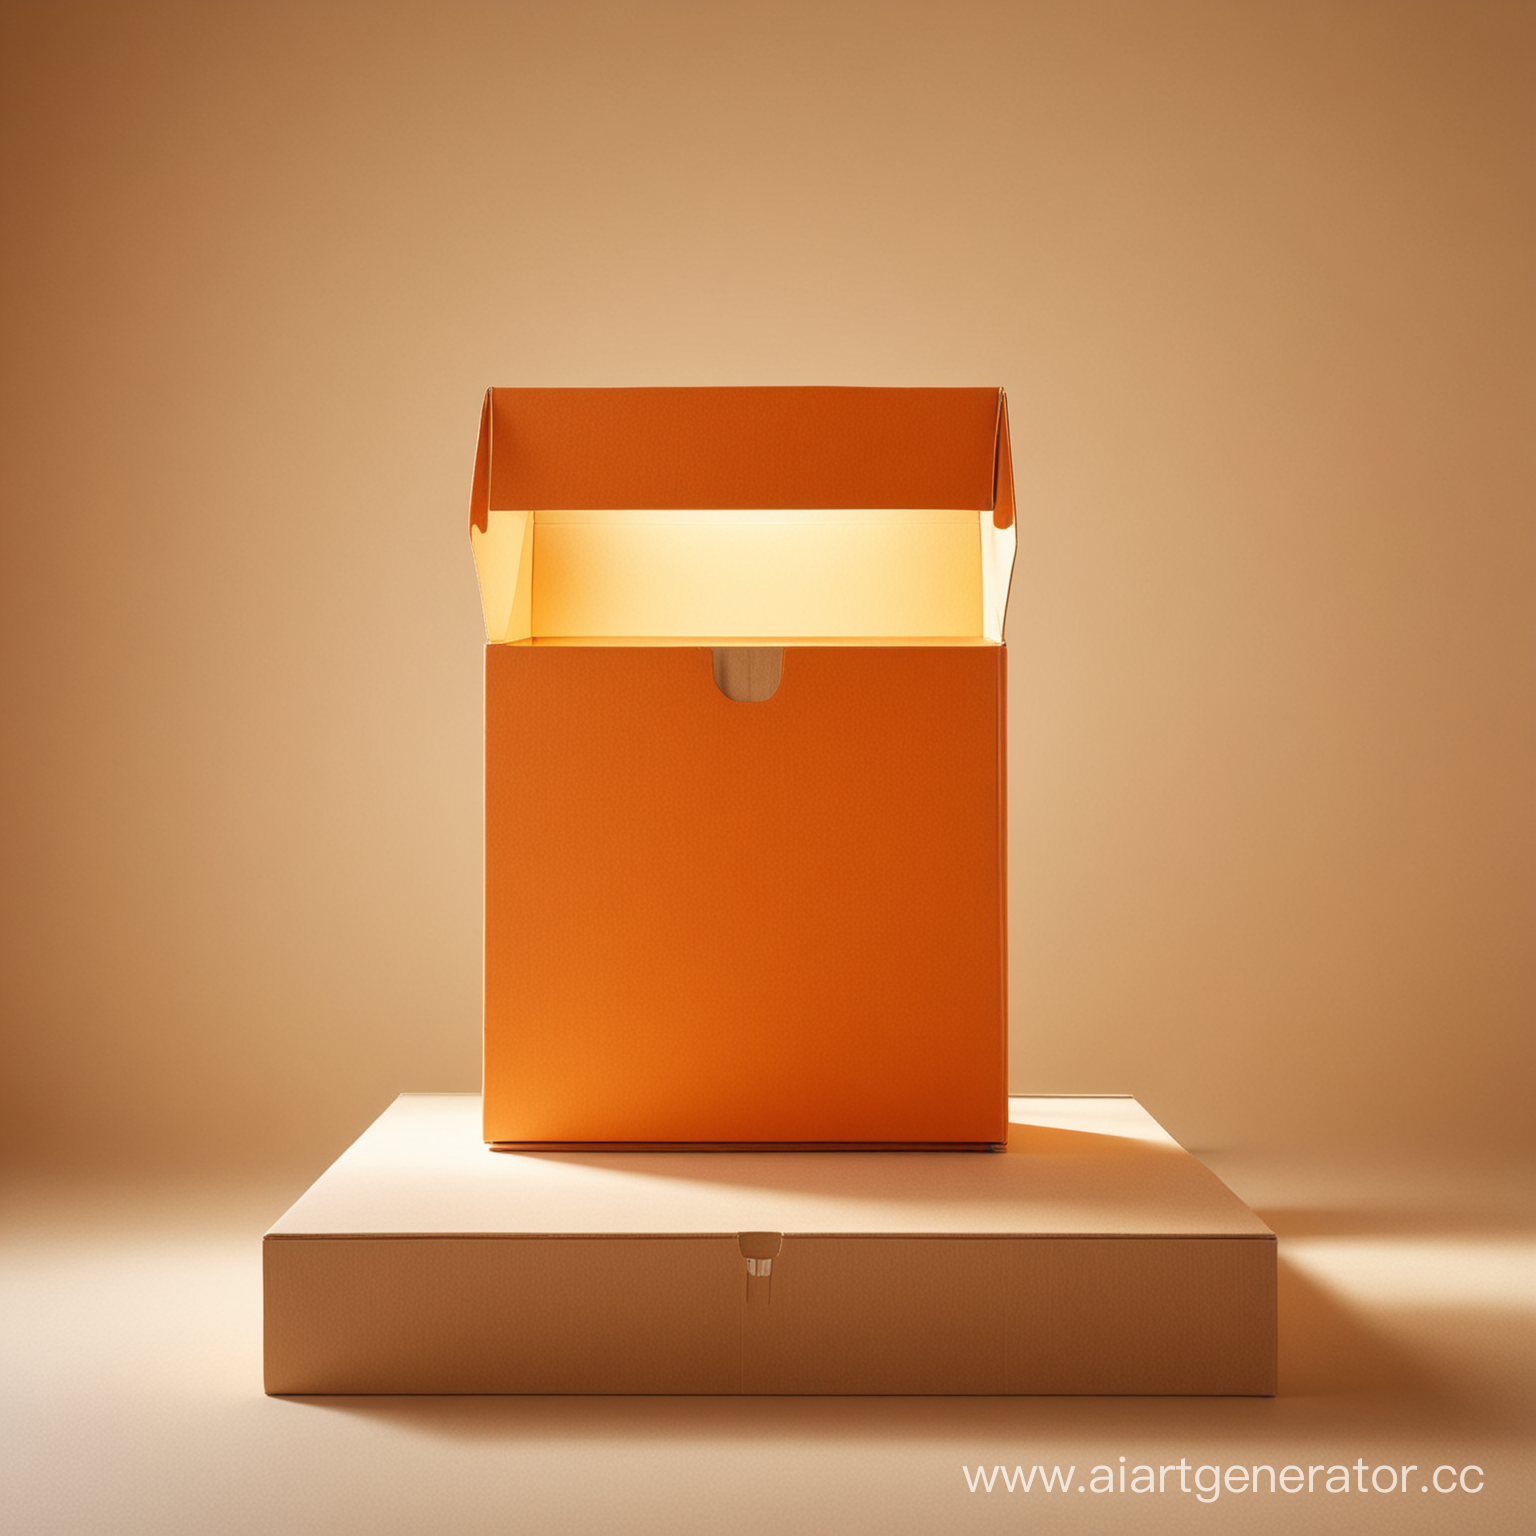 Открытая большая коробка оранжевого цвета стоит на подиуме. Из коробки льется свет. Фон бежевый